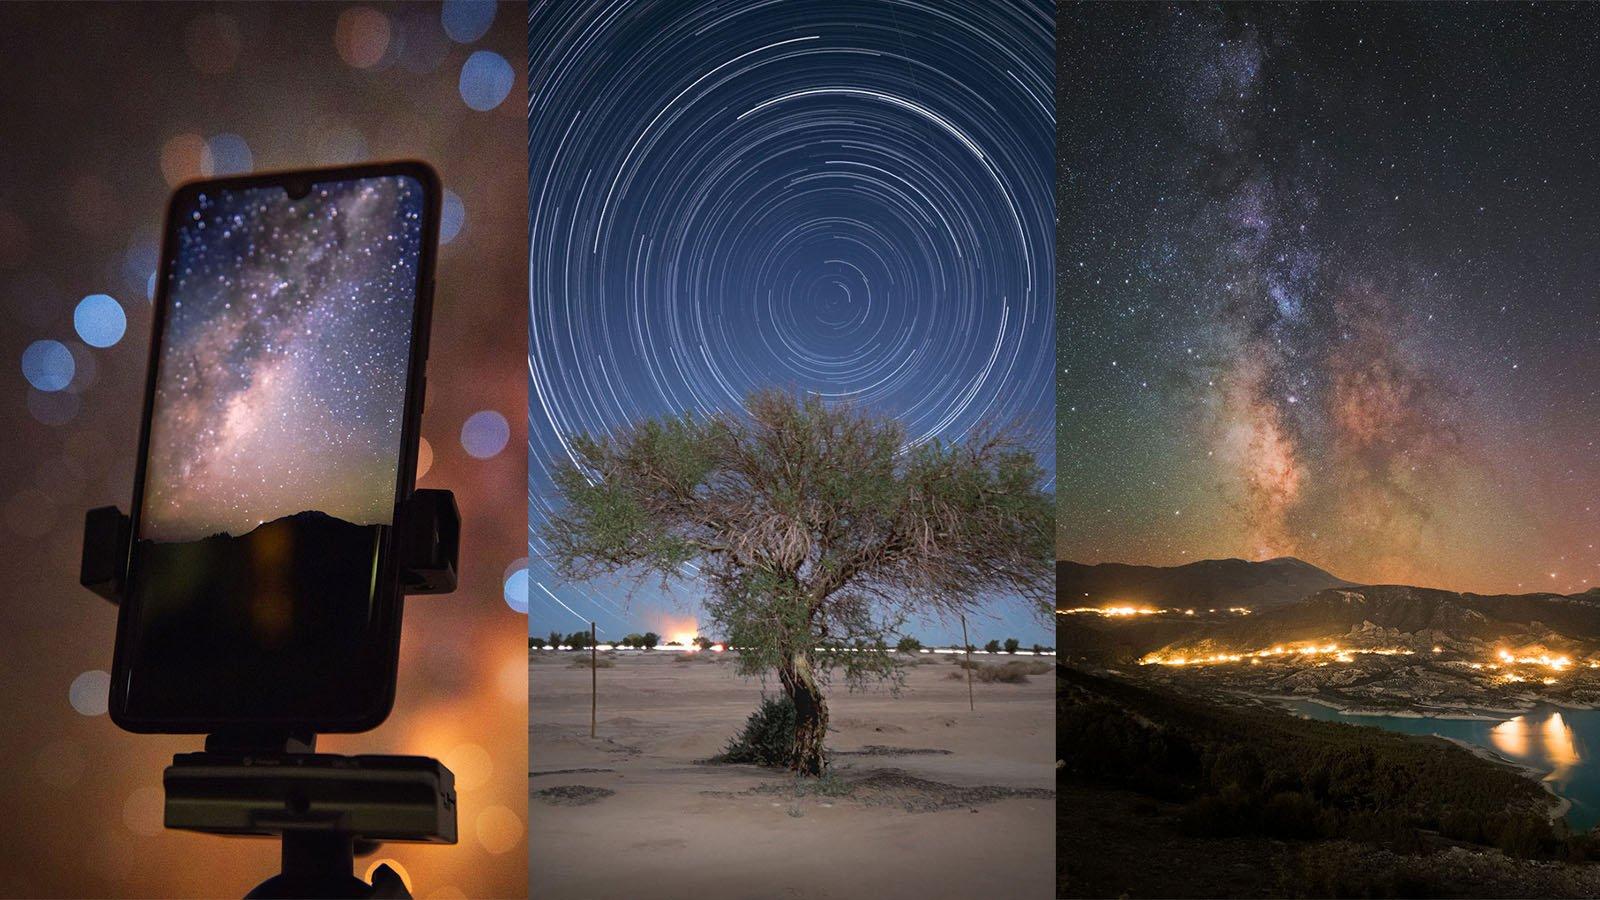 Chưa bao giờ việc chụp ảnh thiên văn trở nên dễ dàng hơn, chỉ cần với một chiếc điện thoại, bạn có thể để lại những kỷ niệm đáng nhớ về vũ trụ. Hãy tới và xem bộ sưu tập ảnh thiên văn đêm của chúng tôi!